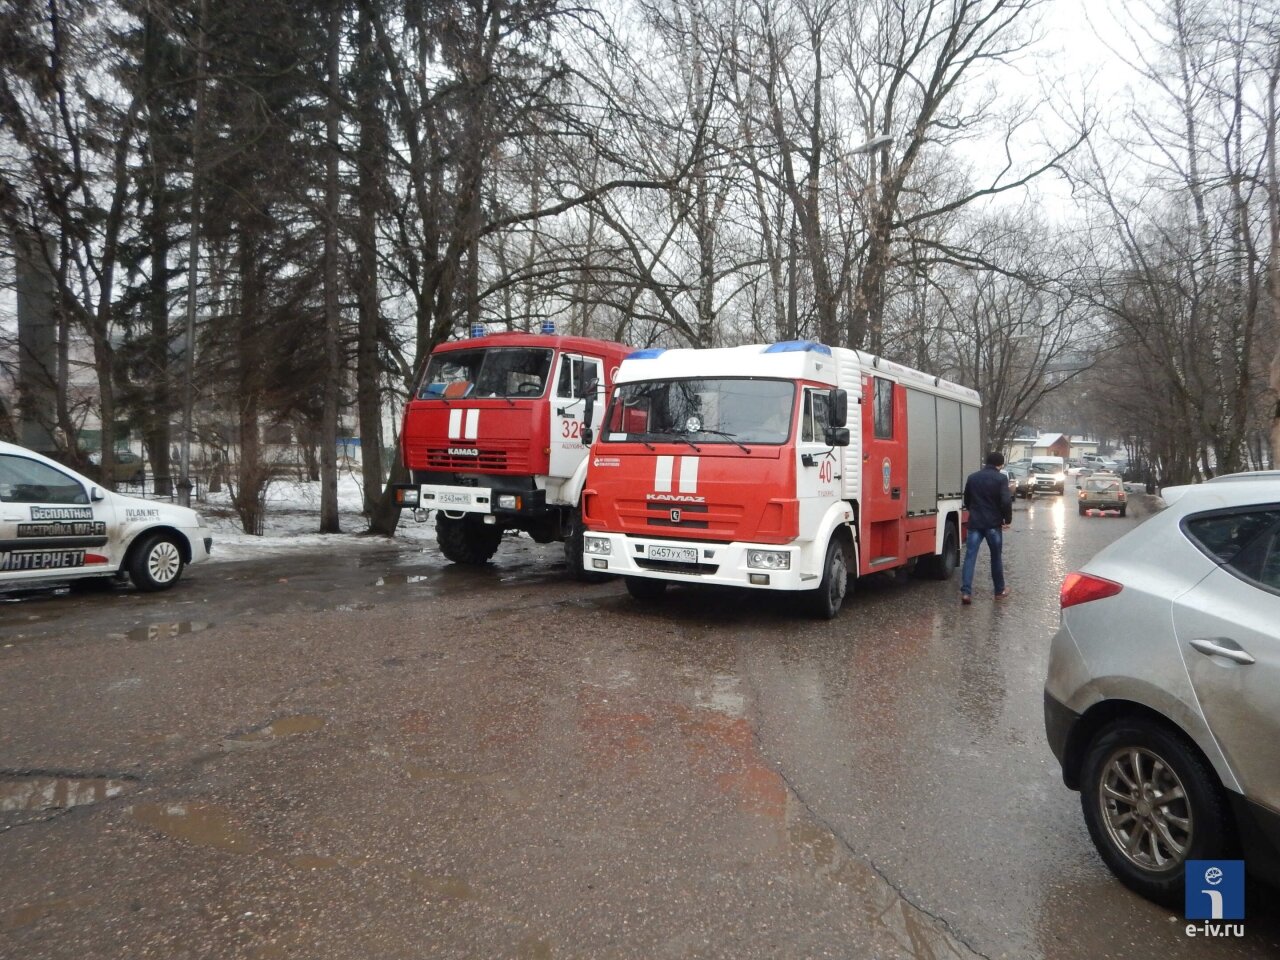 Пожарные машины до сих пор находятся на месте происшествия, Фабричный проезд,1, Ивантеевка